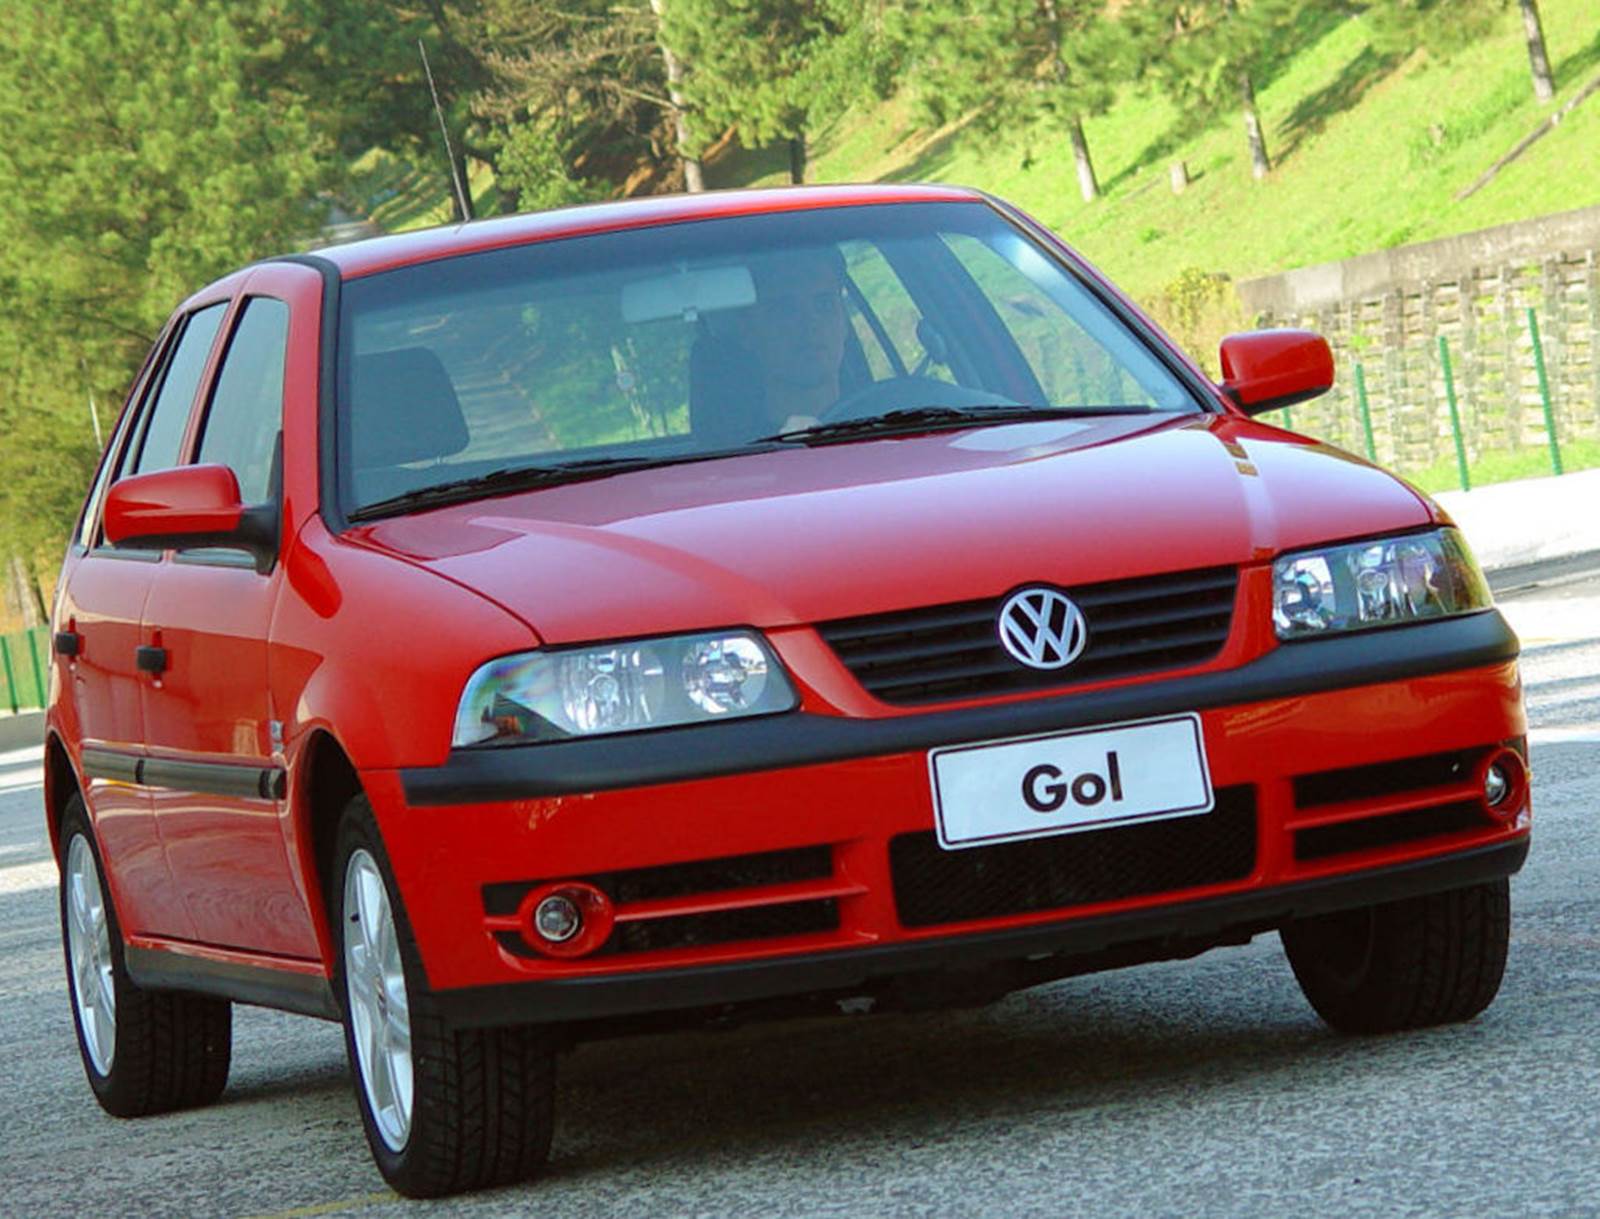 Carro Volkswagen Gol 2003 (Foto: Divulgação)